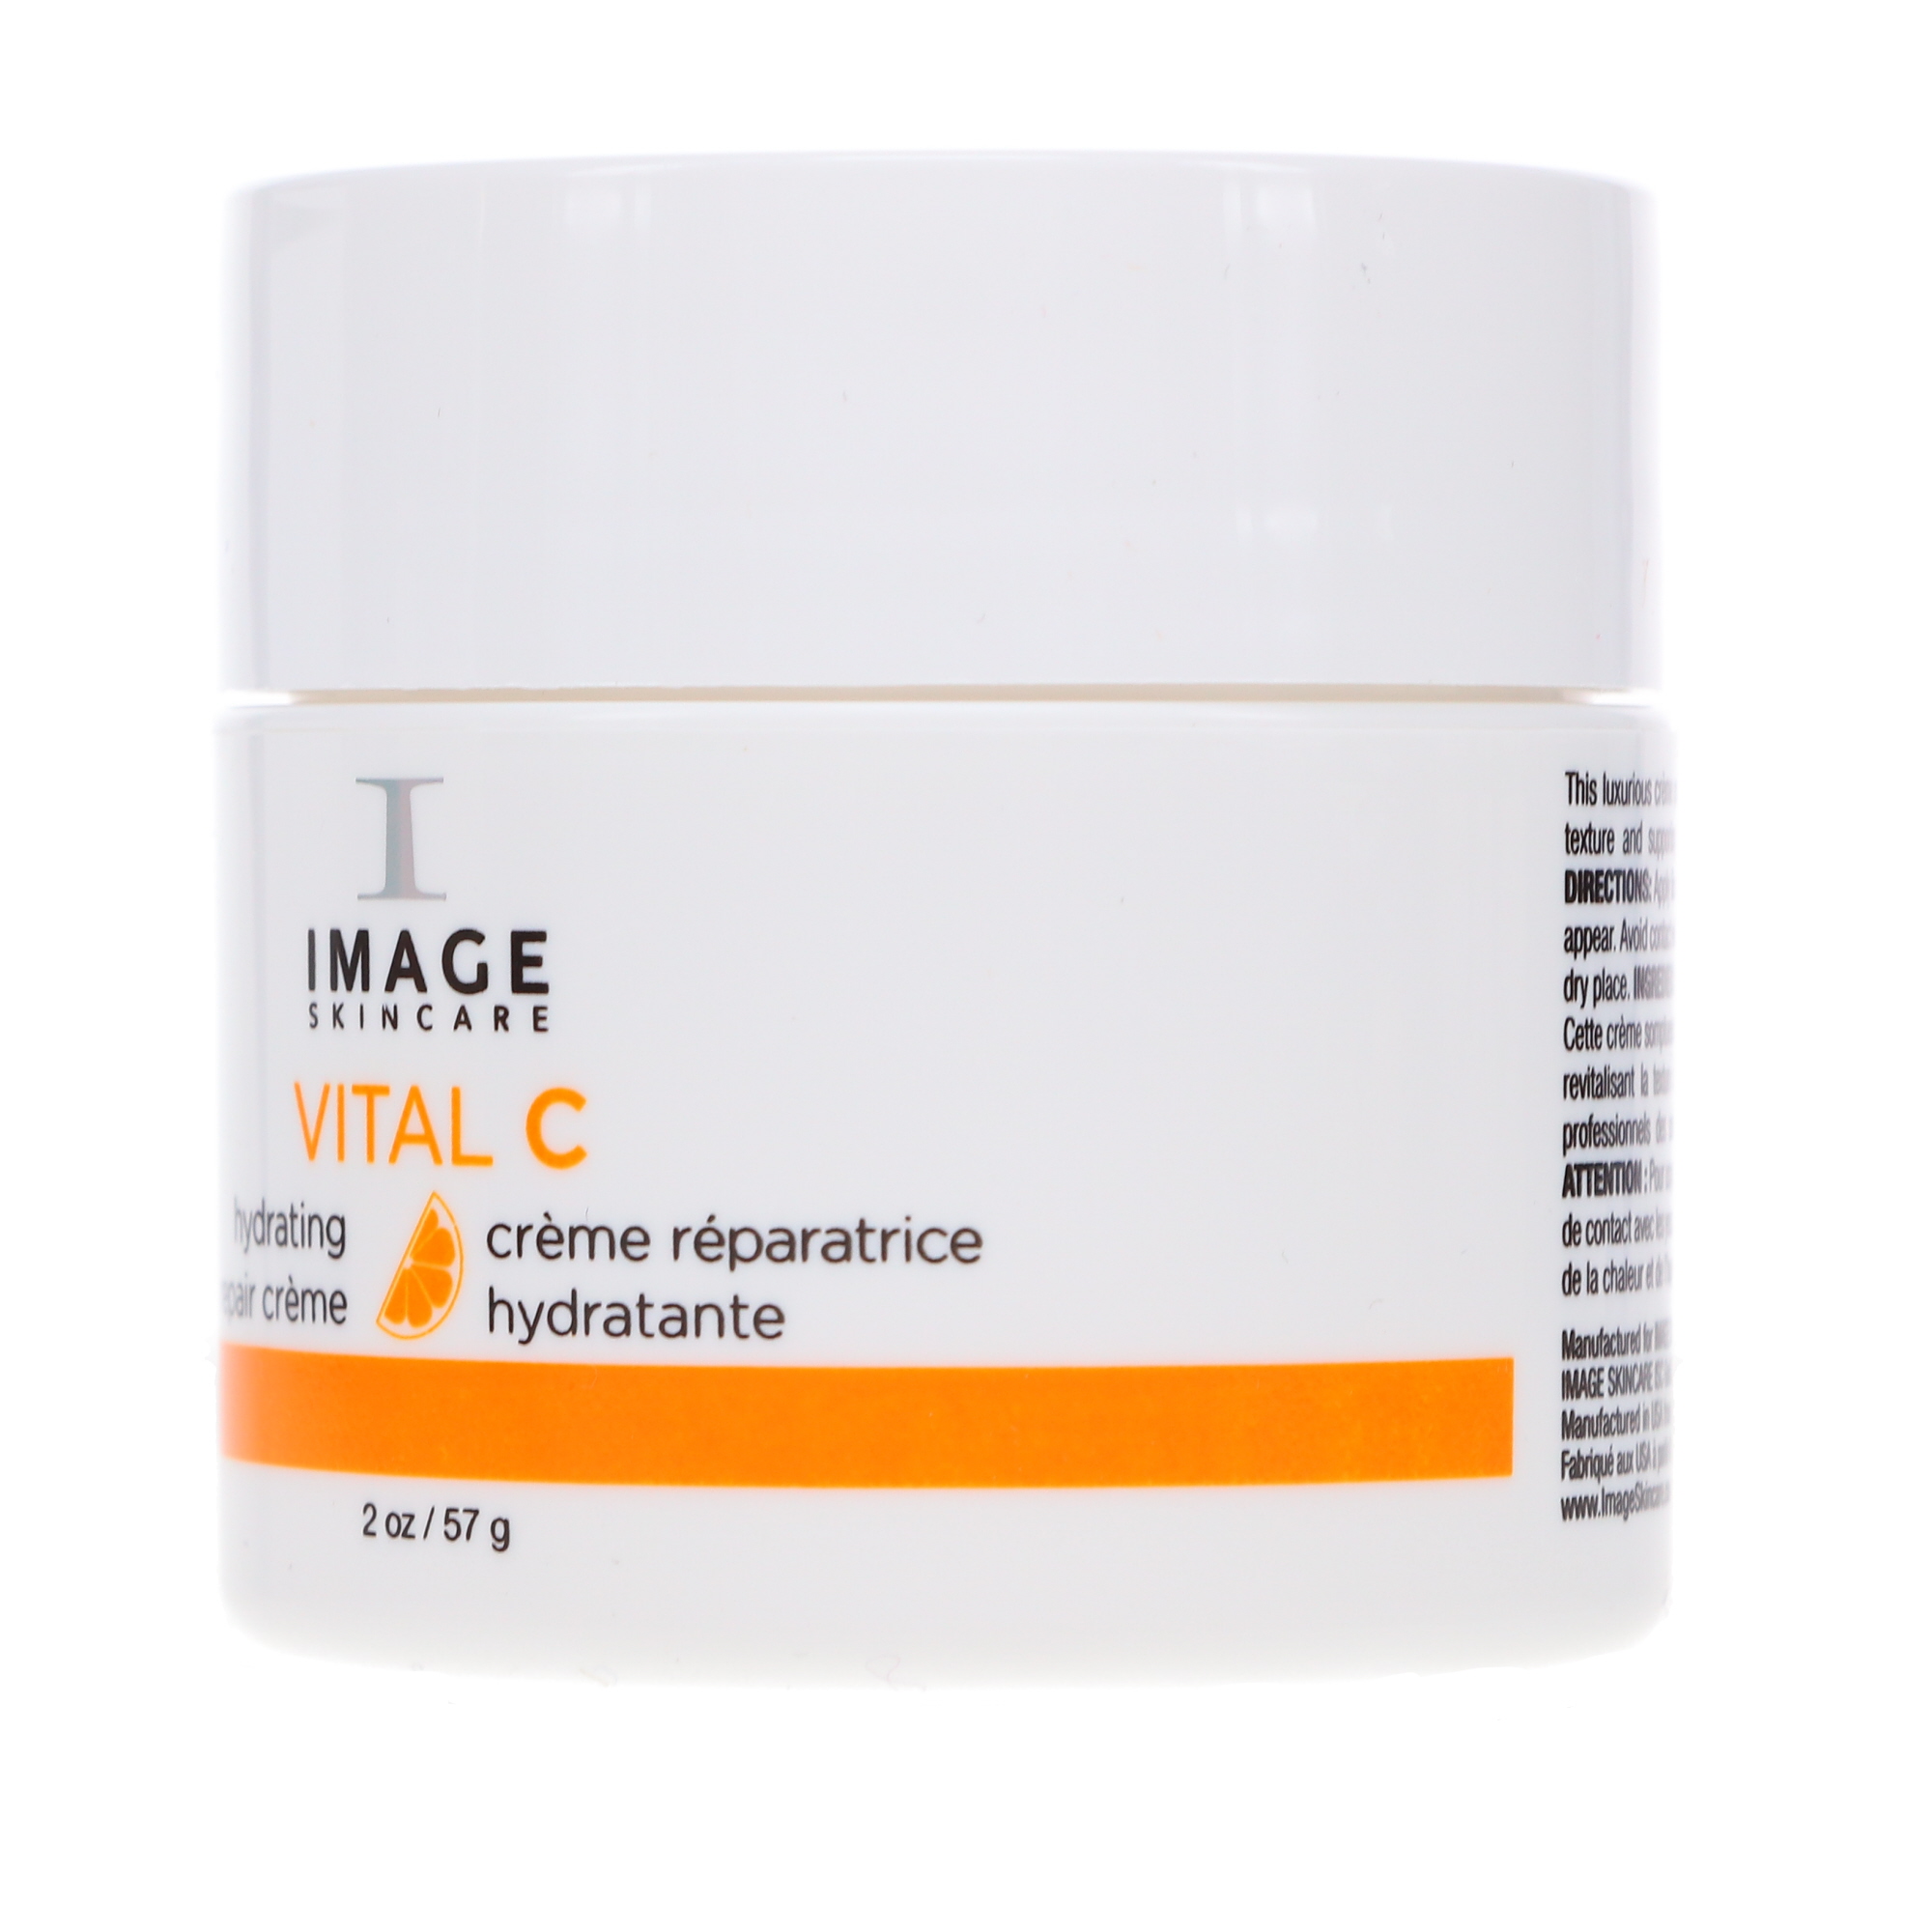 IMAGE Skincare Vital C Hydrating Repair Creme 2 oz - image 4 of 8